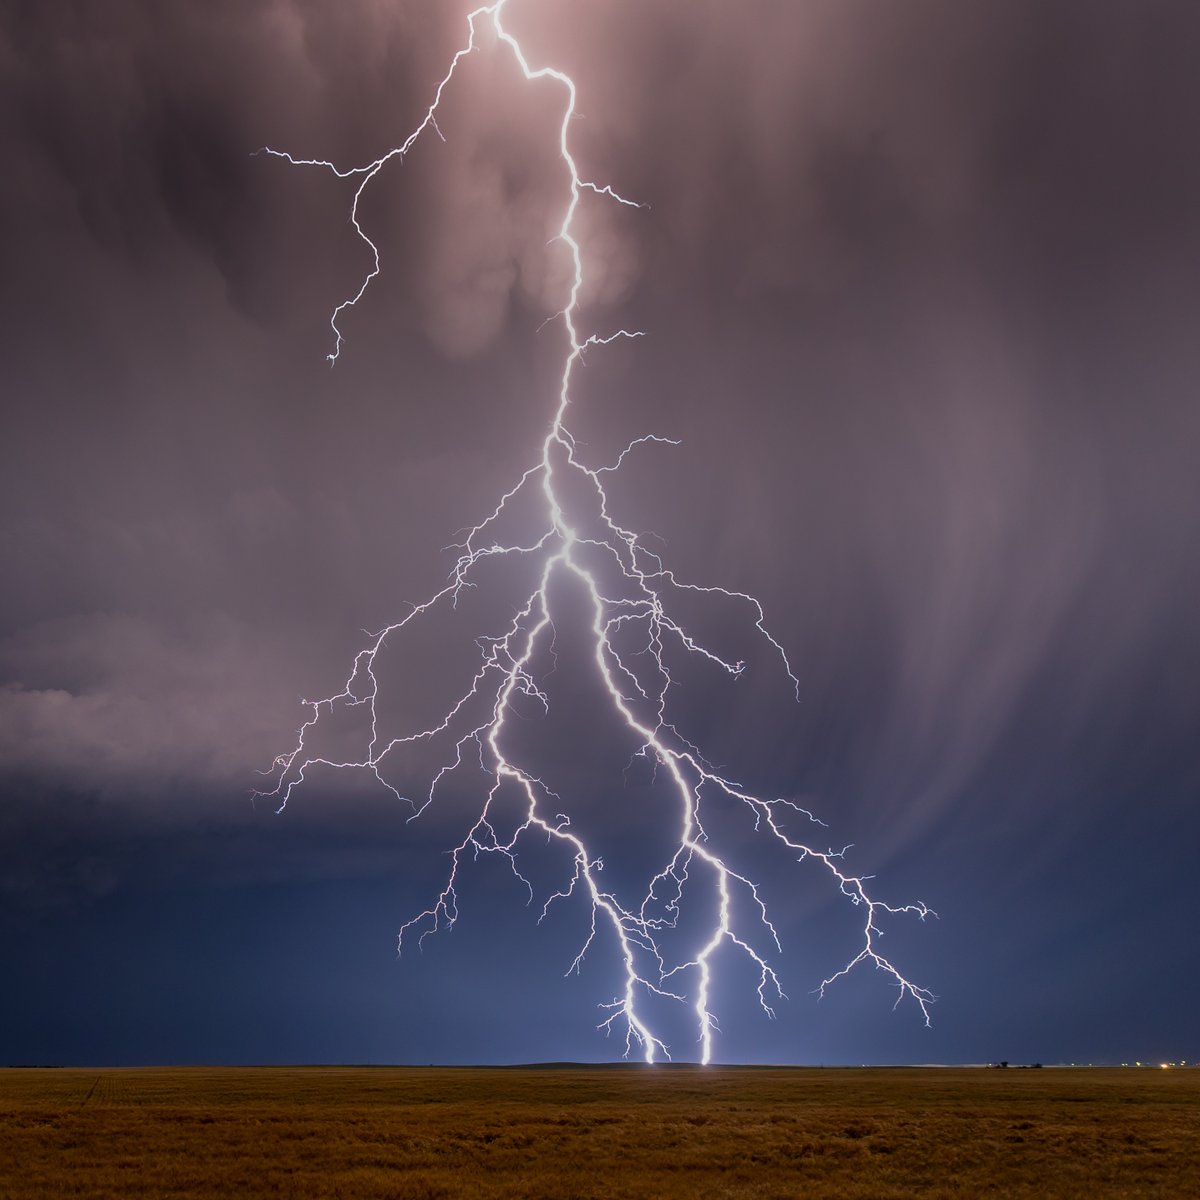 The 2am lightning show over Eckley Colorado